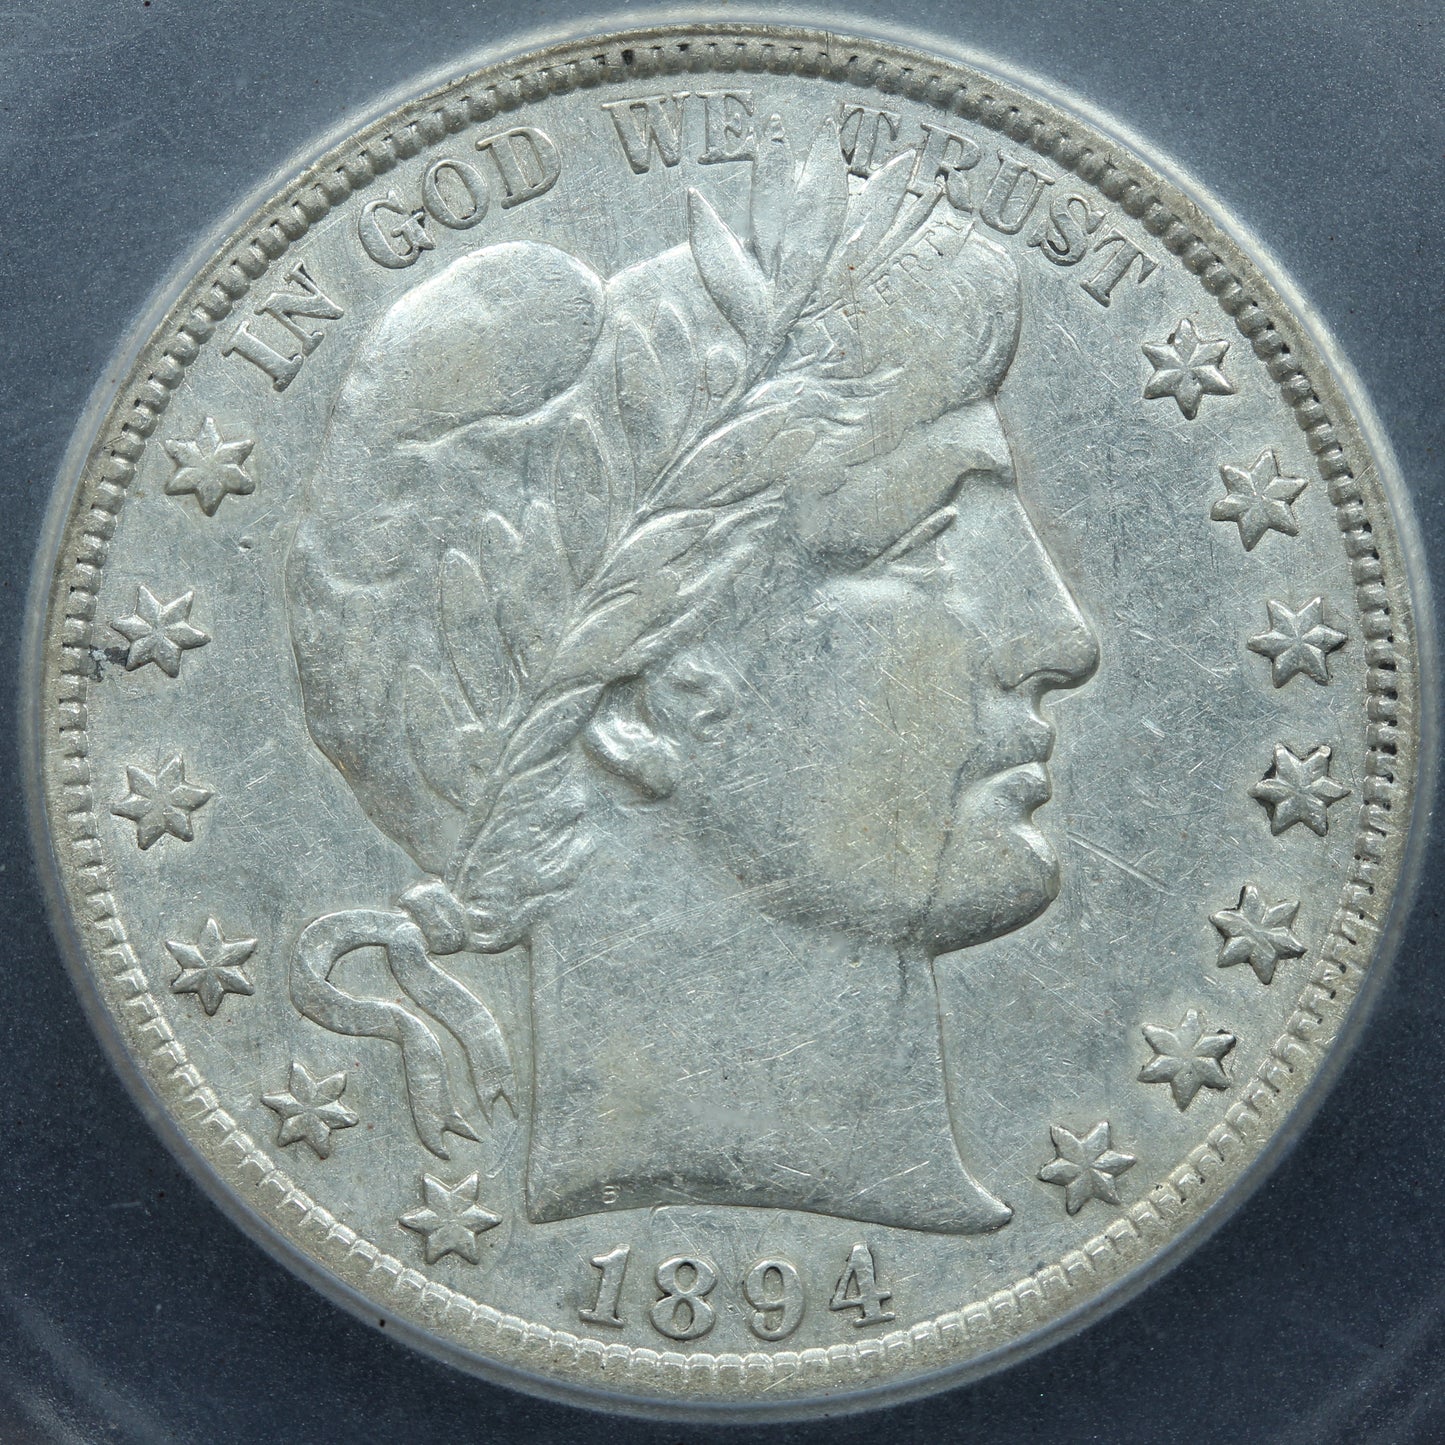 1894-S (San Francisco) Barber Half Dollar 50c 90% Silver - ICG EF 40